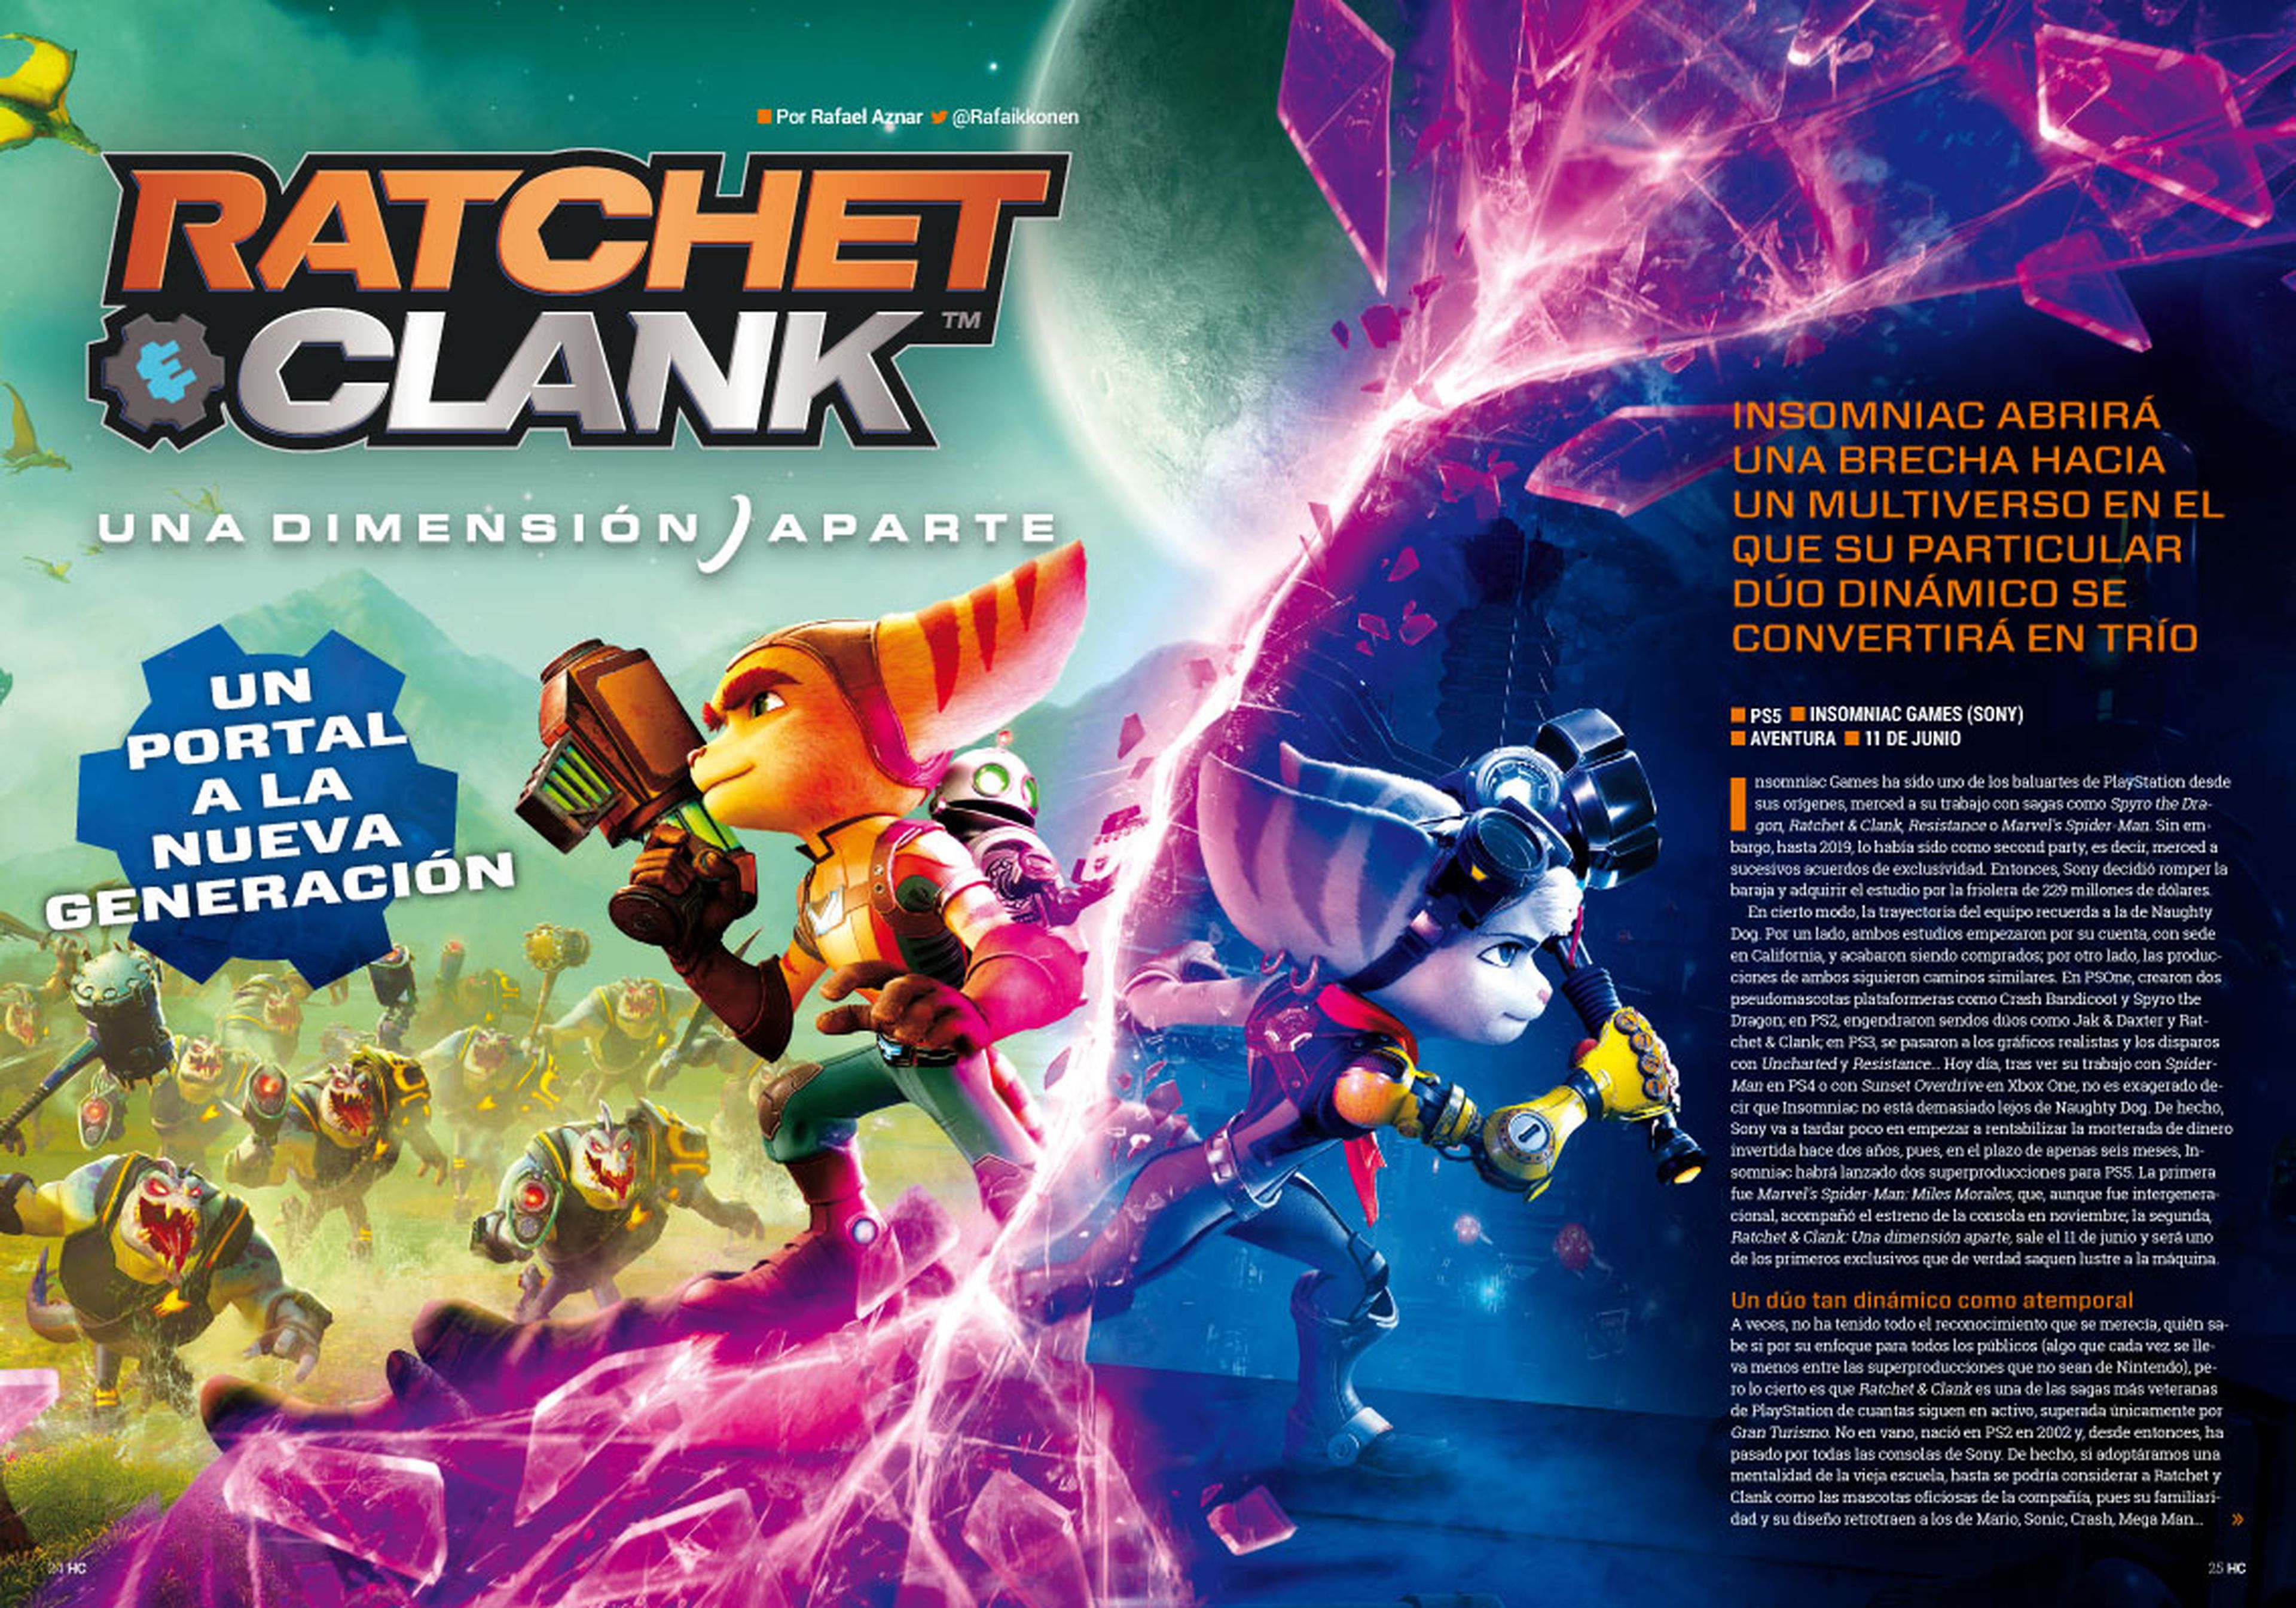 Hobby Consolas 359, a la venta con Ratchet & Clank en portada y en un póster doble